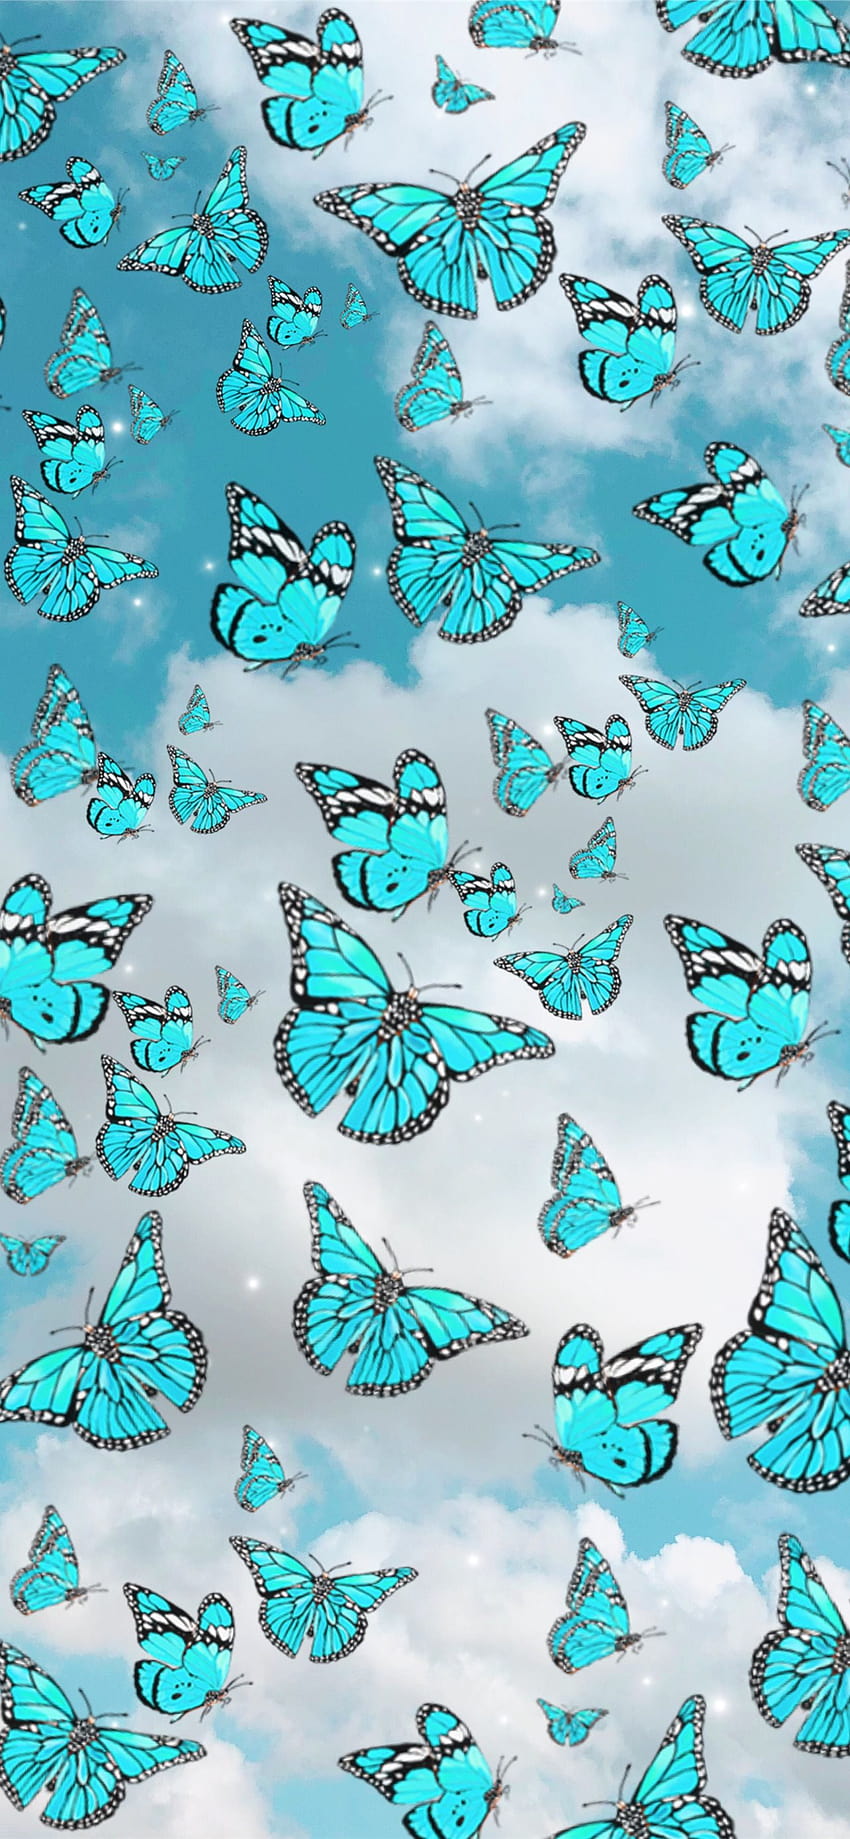 Latest Butterfly iPhone, butterfly pattern HD phone wallpaper | Pxfuel